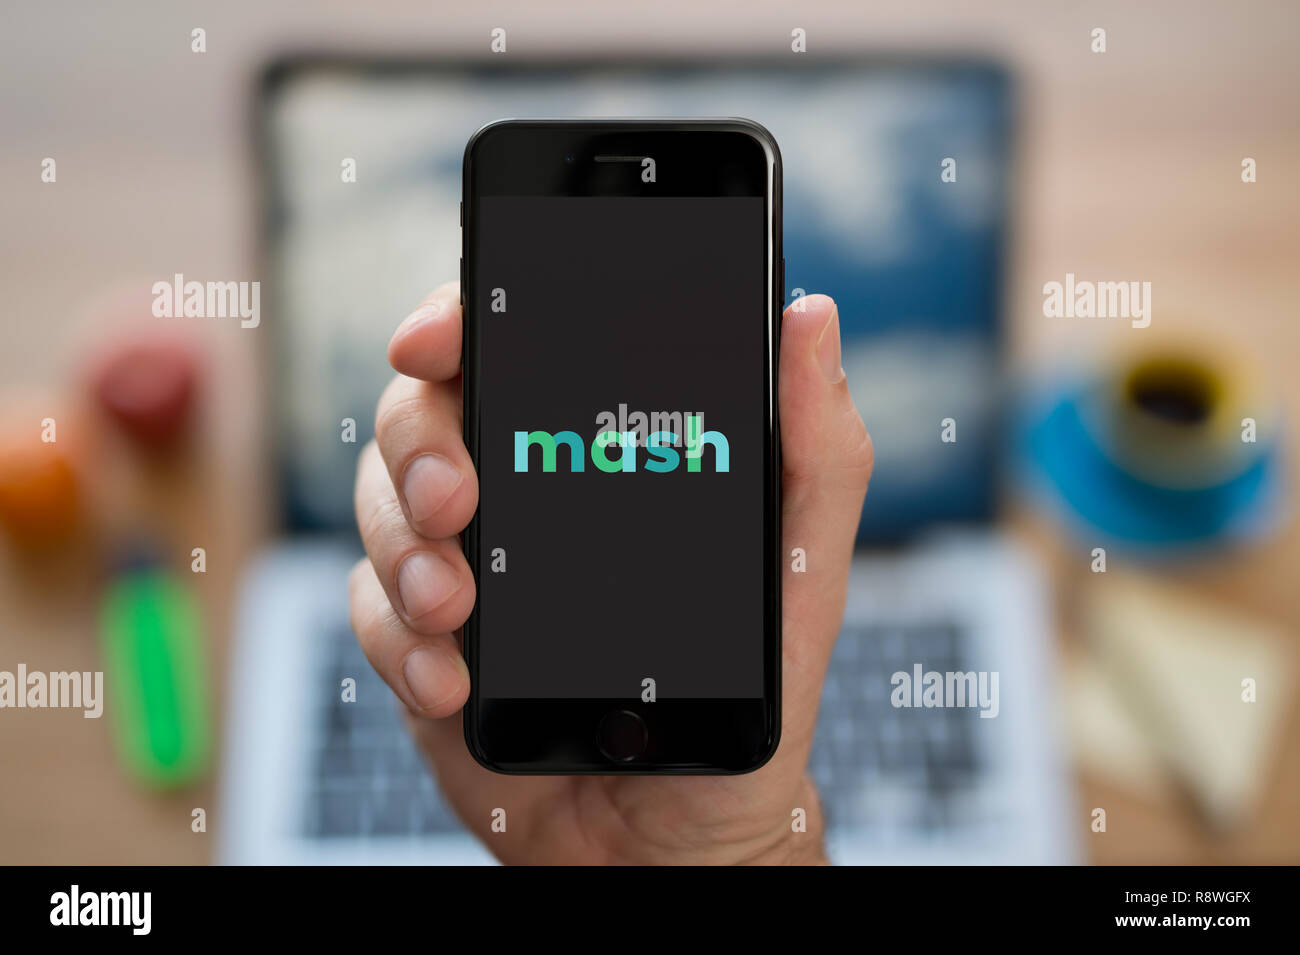 Un uomo guarda al suo iPhone che visualizza il logo Mash (solo uso editoriale). Foto Stock